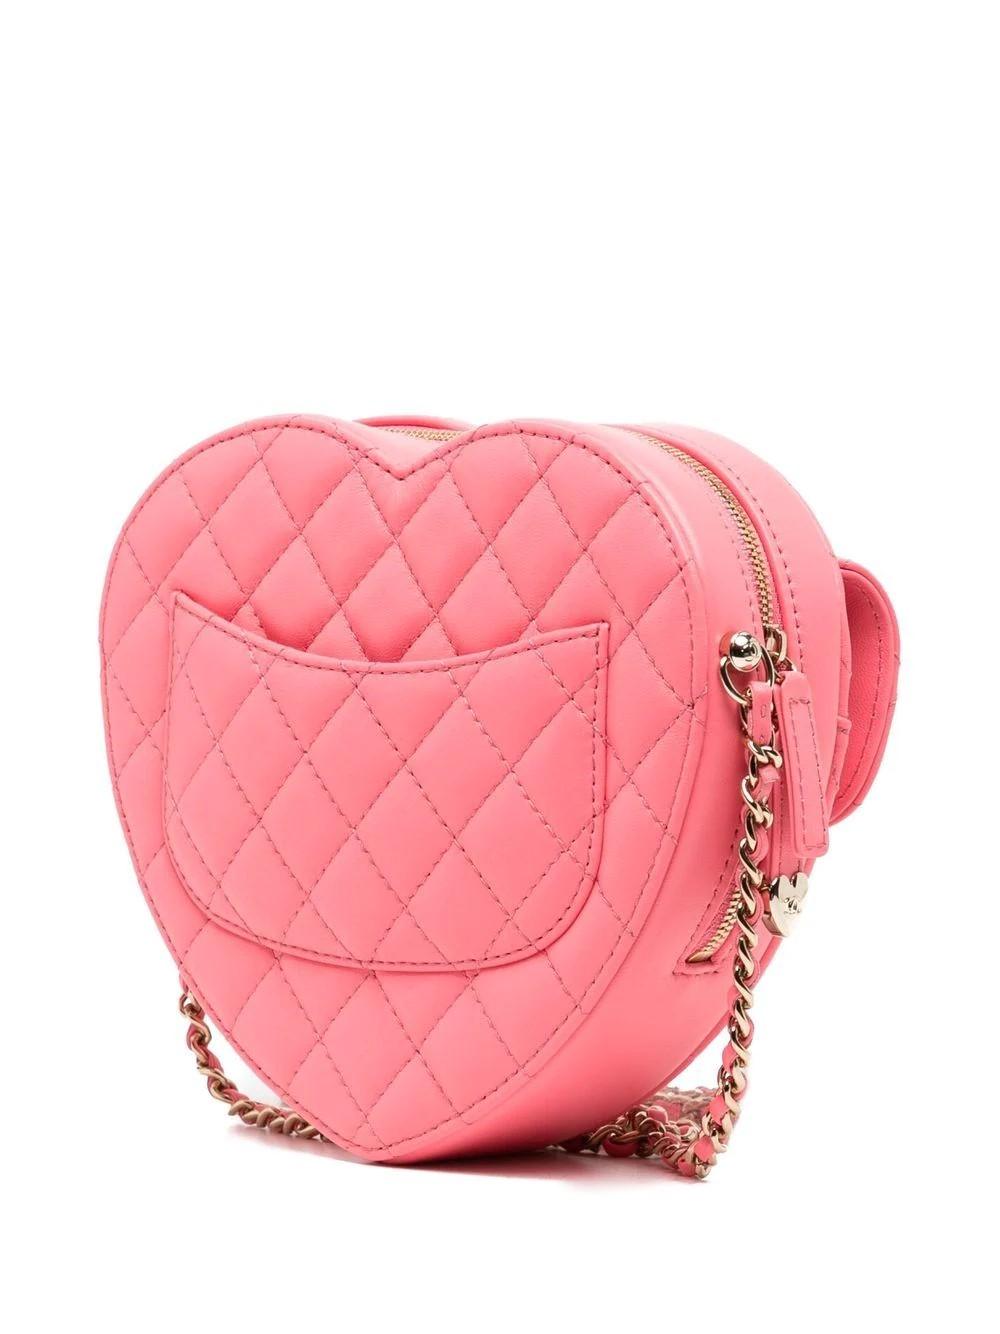 Diese luxuriöse Pink Heart Bag aus der Chanel SS22-Kollektion besticht durch ihr einzigartiges Design und die wunderschöne Lederverarbeitung. Mit ihrer weichen und geschmeidigen Rautensteppung, einem Schulterriemen aus Kettengliedern, einem